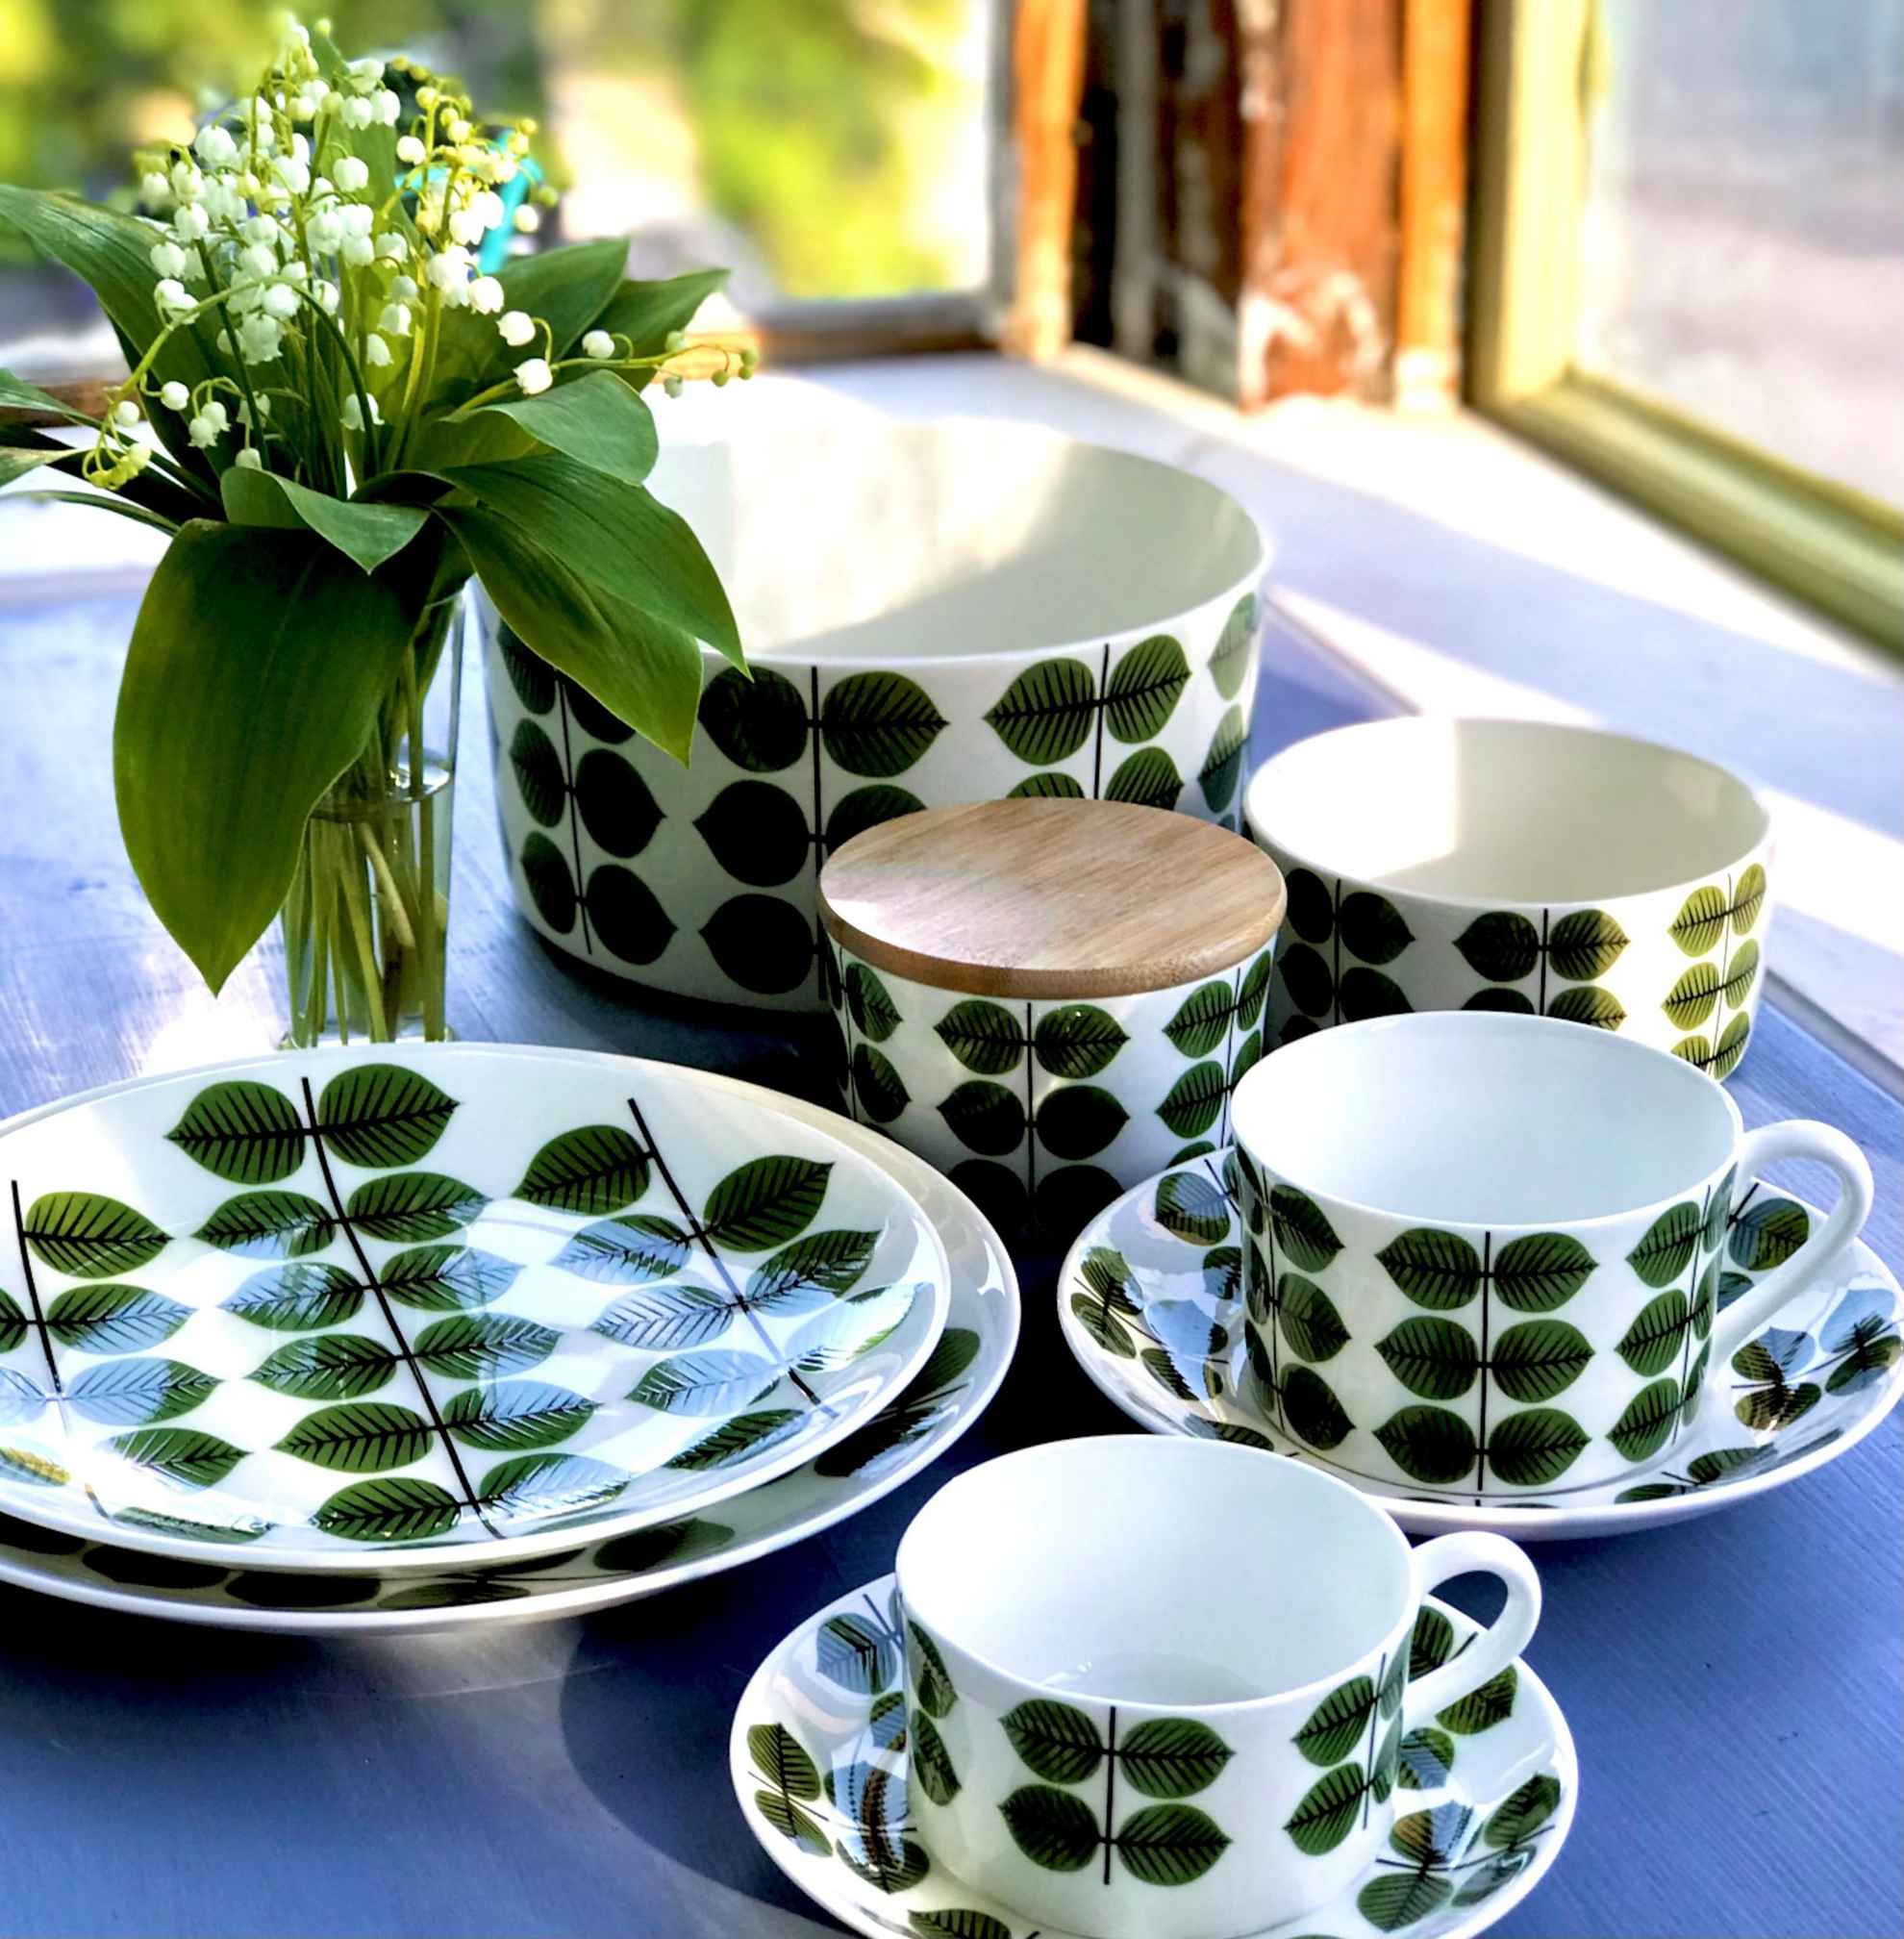 Gros plan sur un ensemble de porcelaine posé sur une table et composé de vaisselle peinte de feuilles vertes et d’un vase avec des muguets.